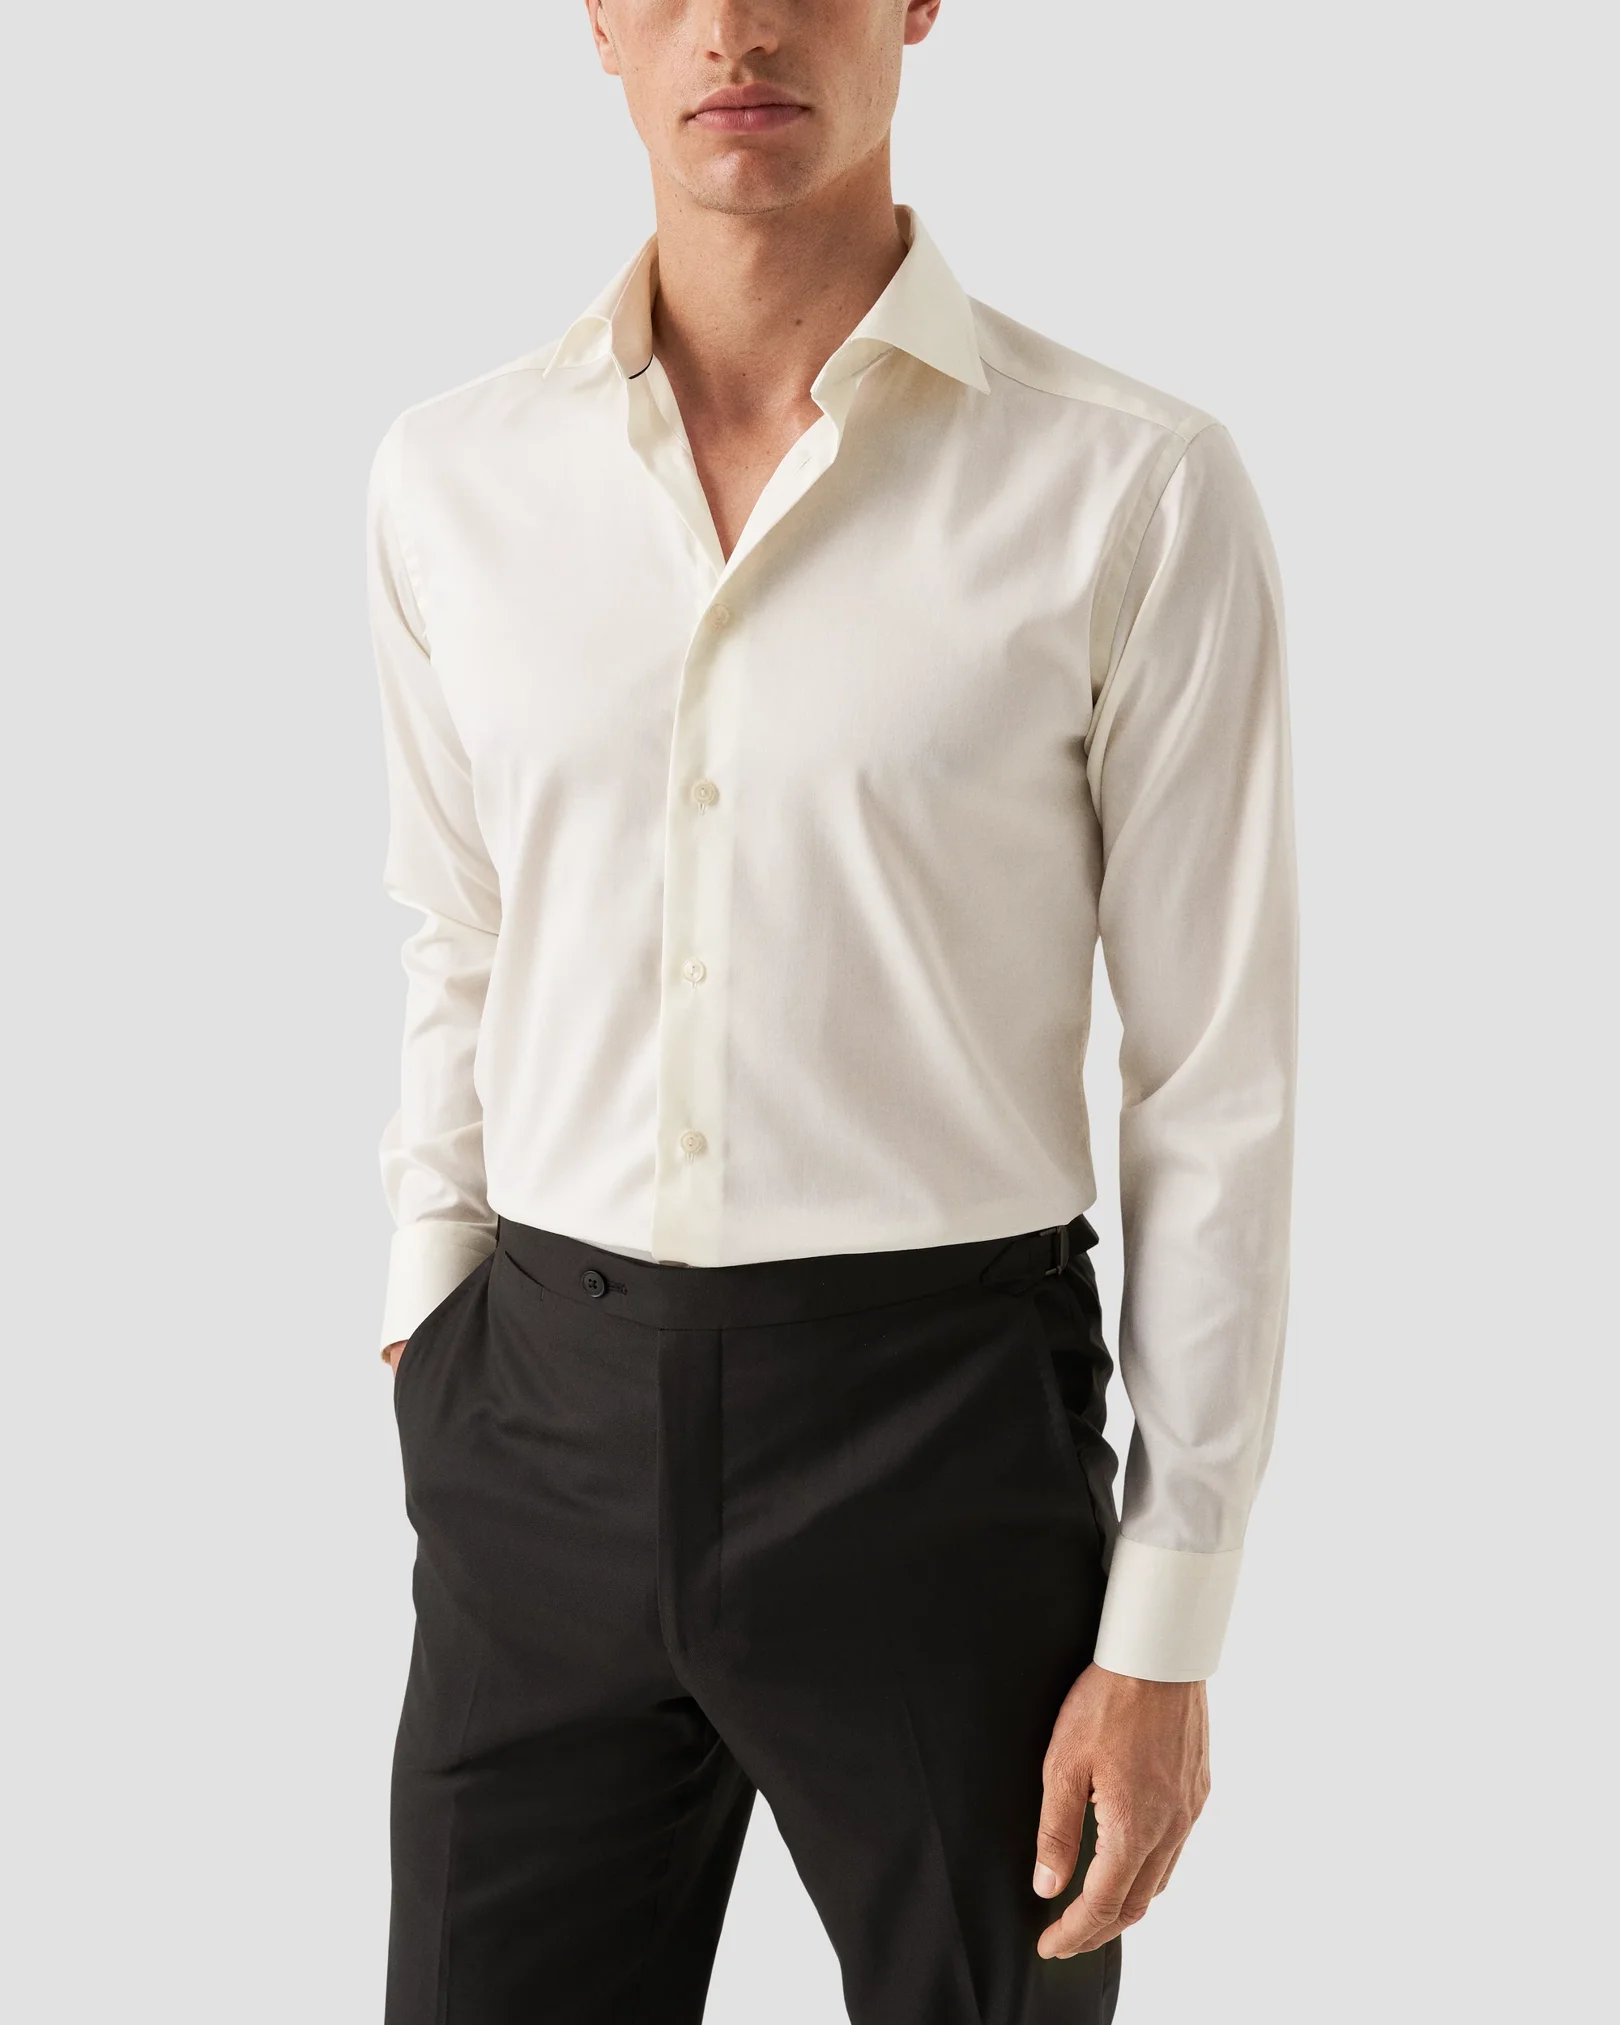 Eton - off white twill shirt